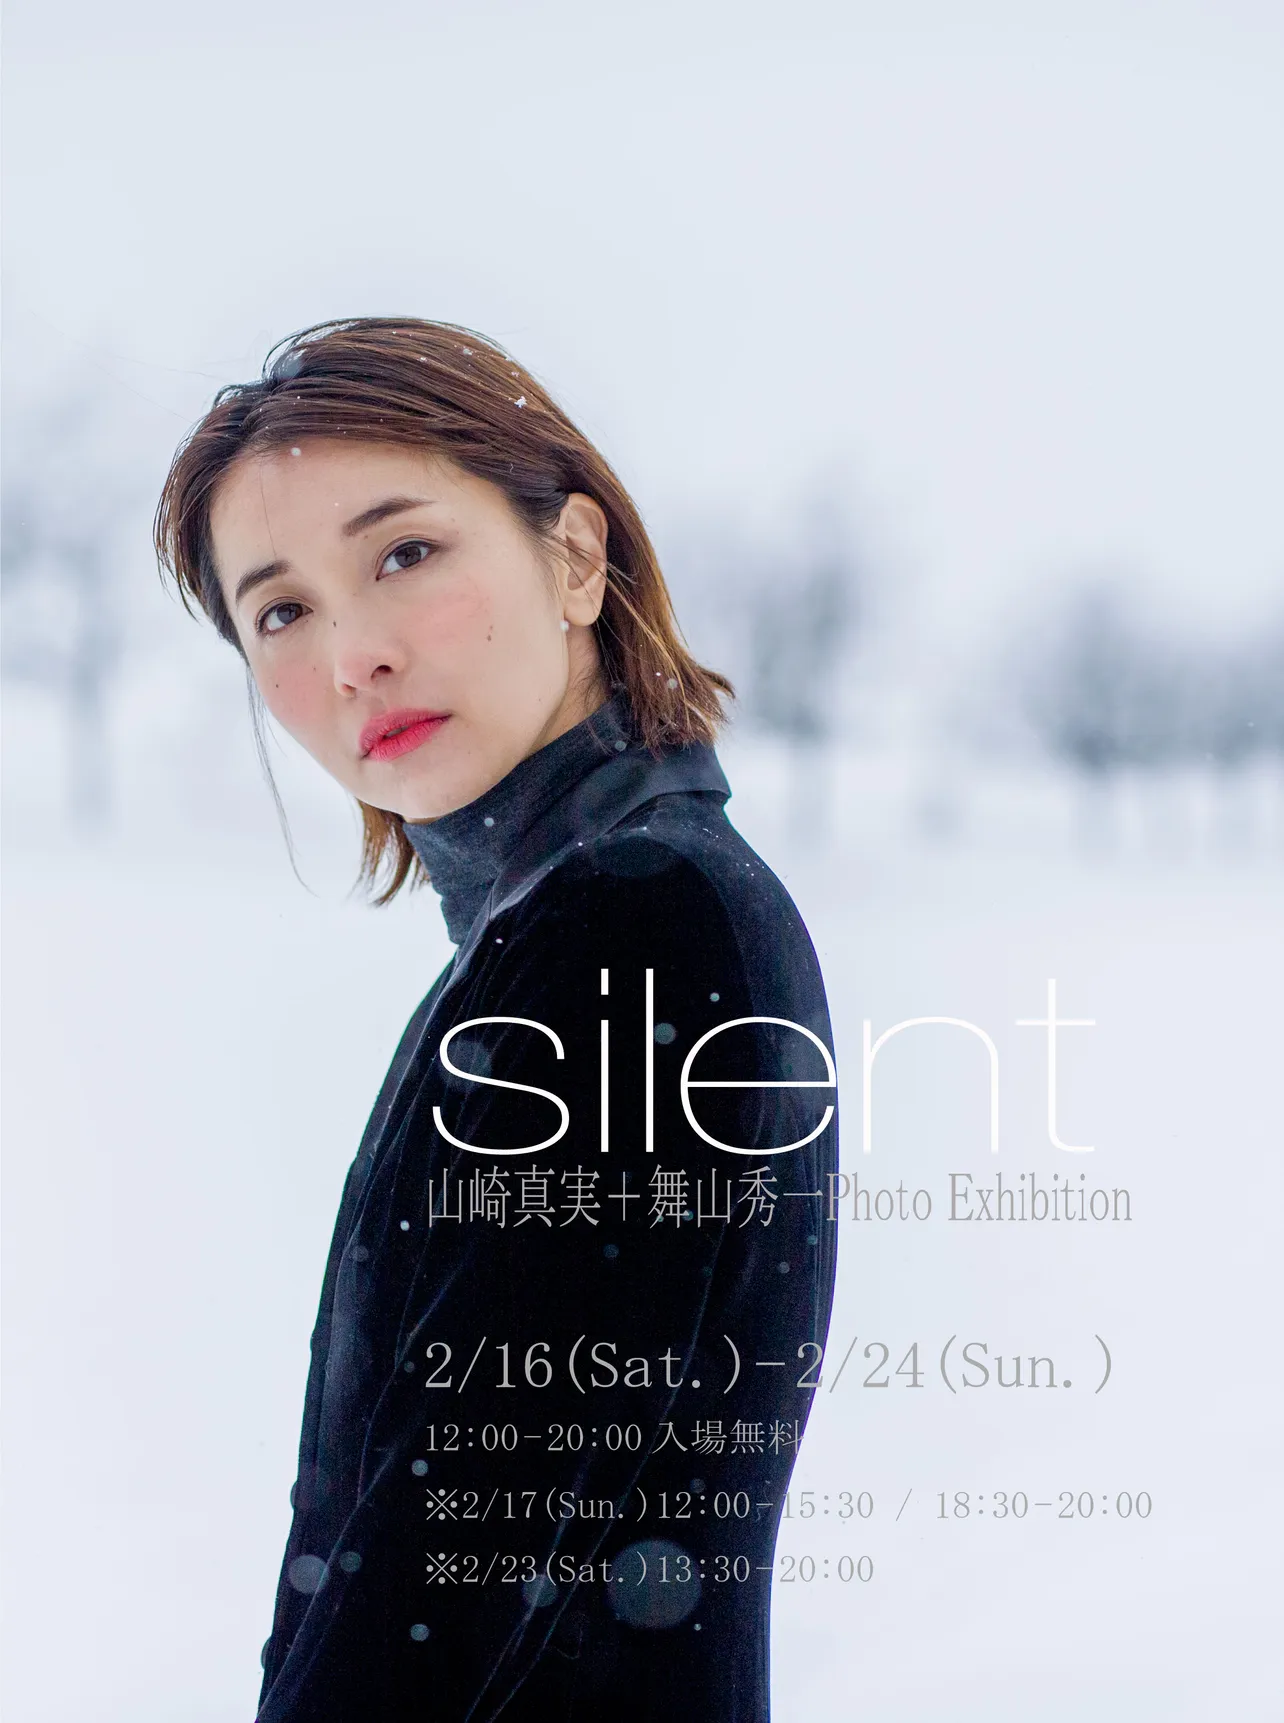 写真展「⼭崎真実＋舞⼭秀⼀Photo Exhibition [silent]（サイレント）」より